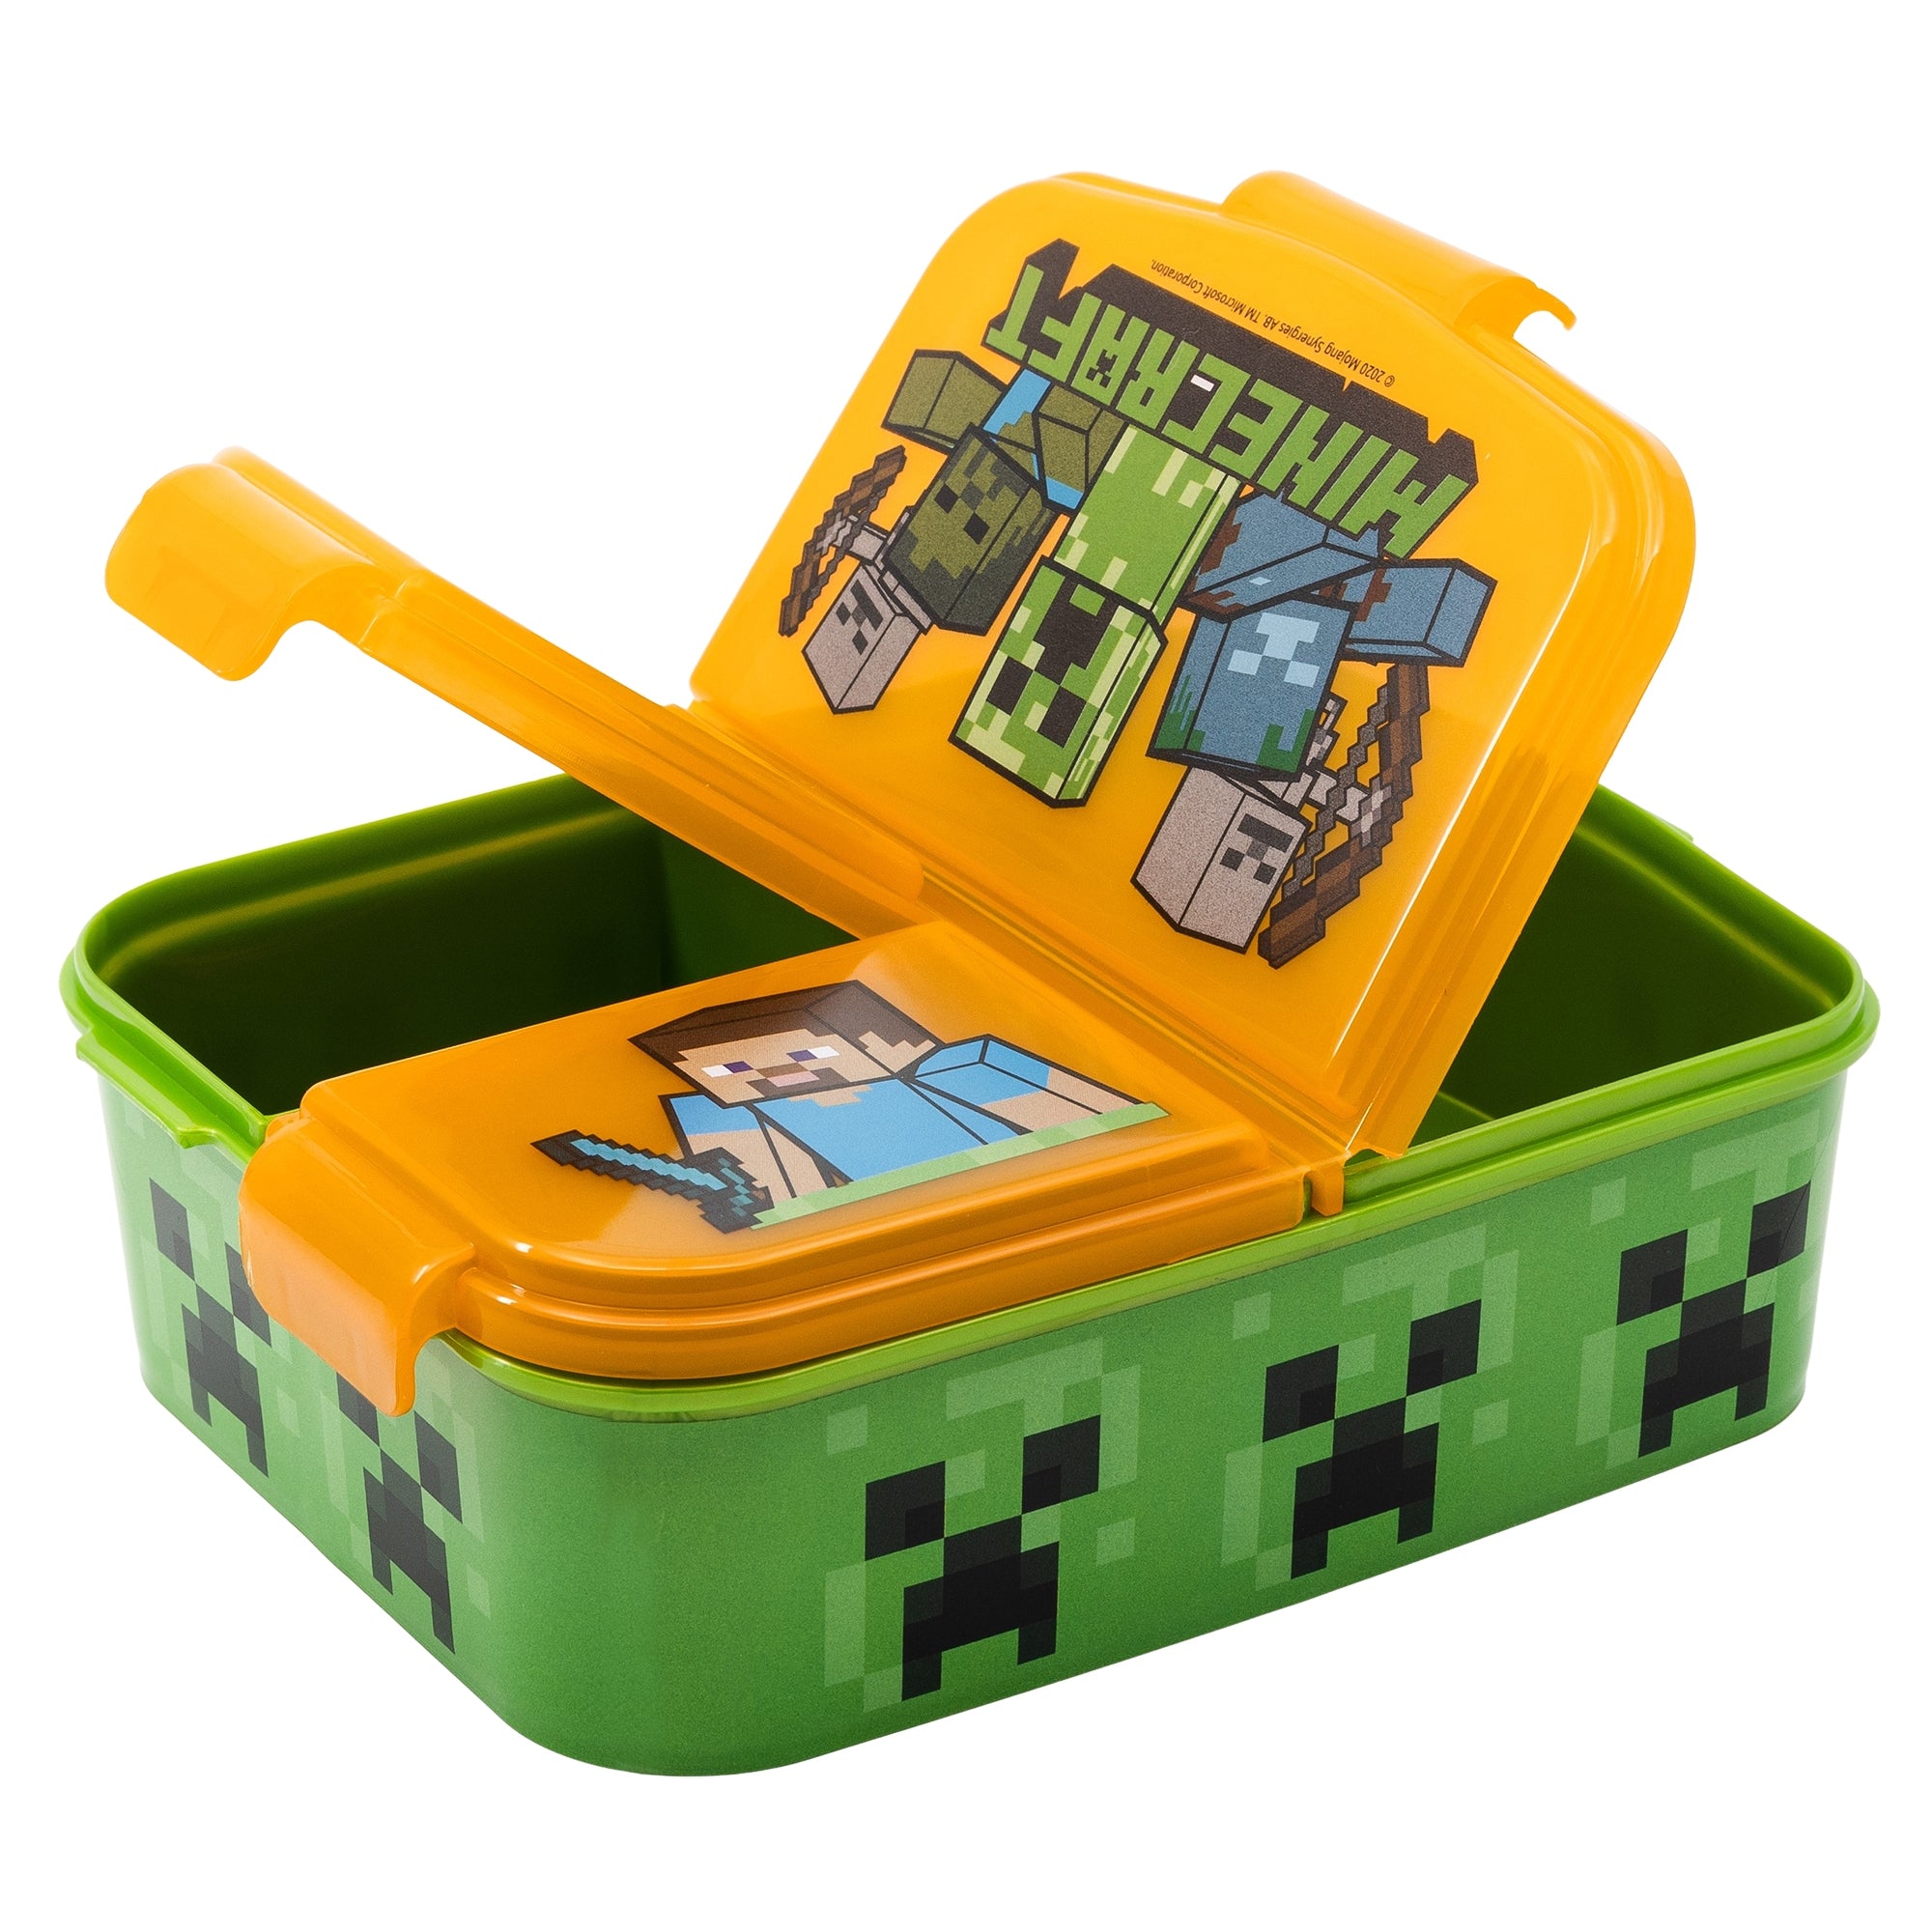 Nestisbox  með þremur hólfum - Minecraft